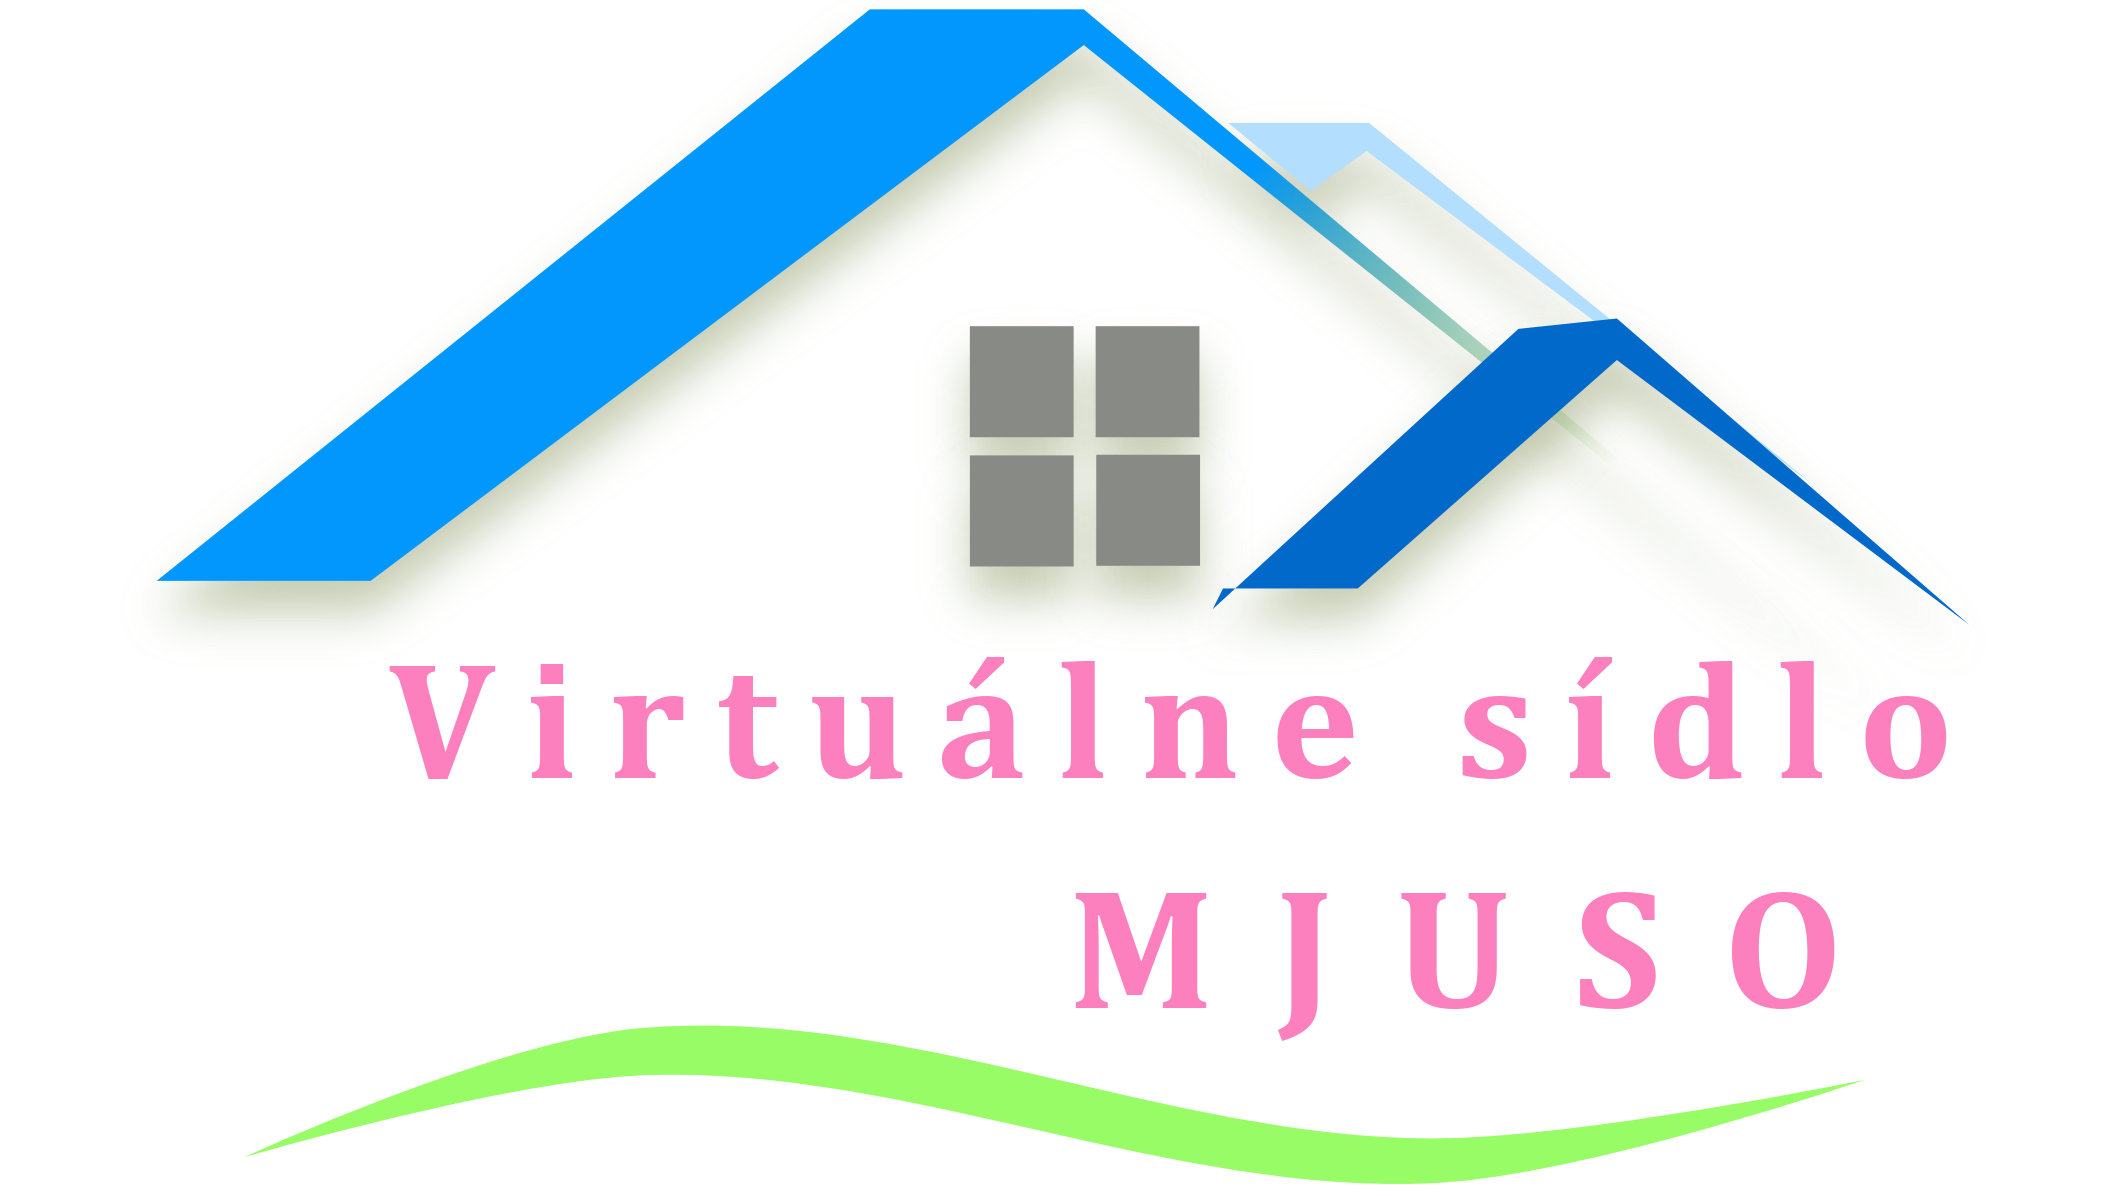 Virtuálne sídlo MJUSO